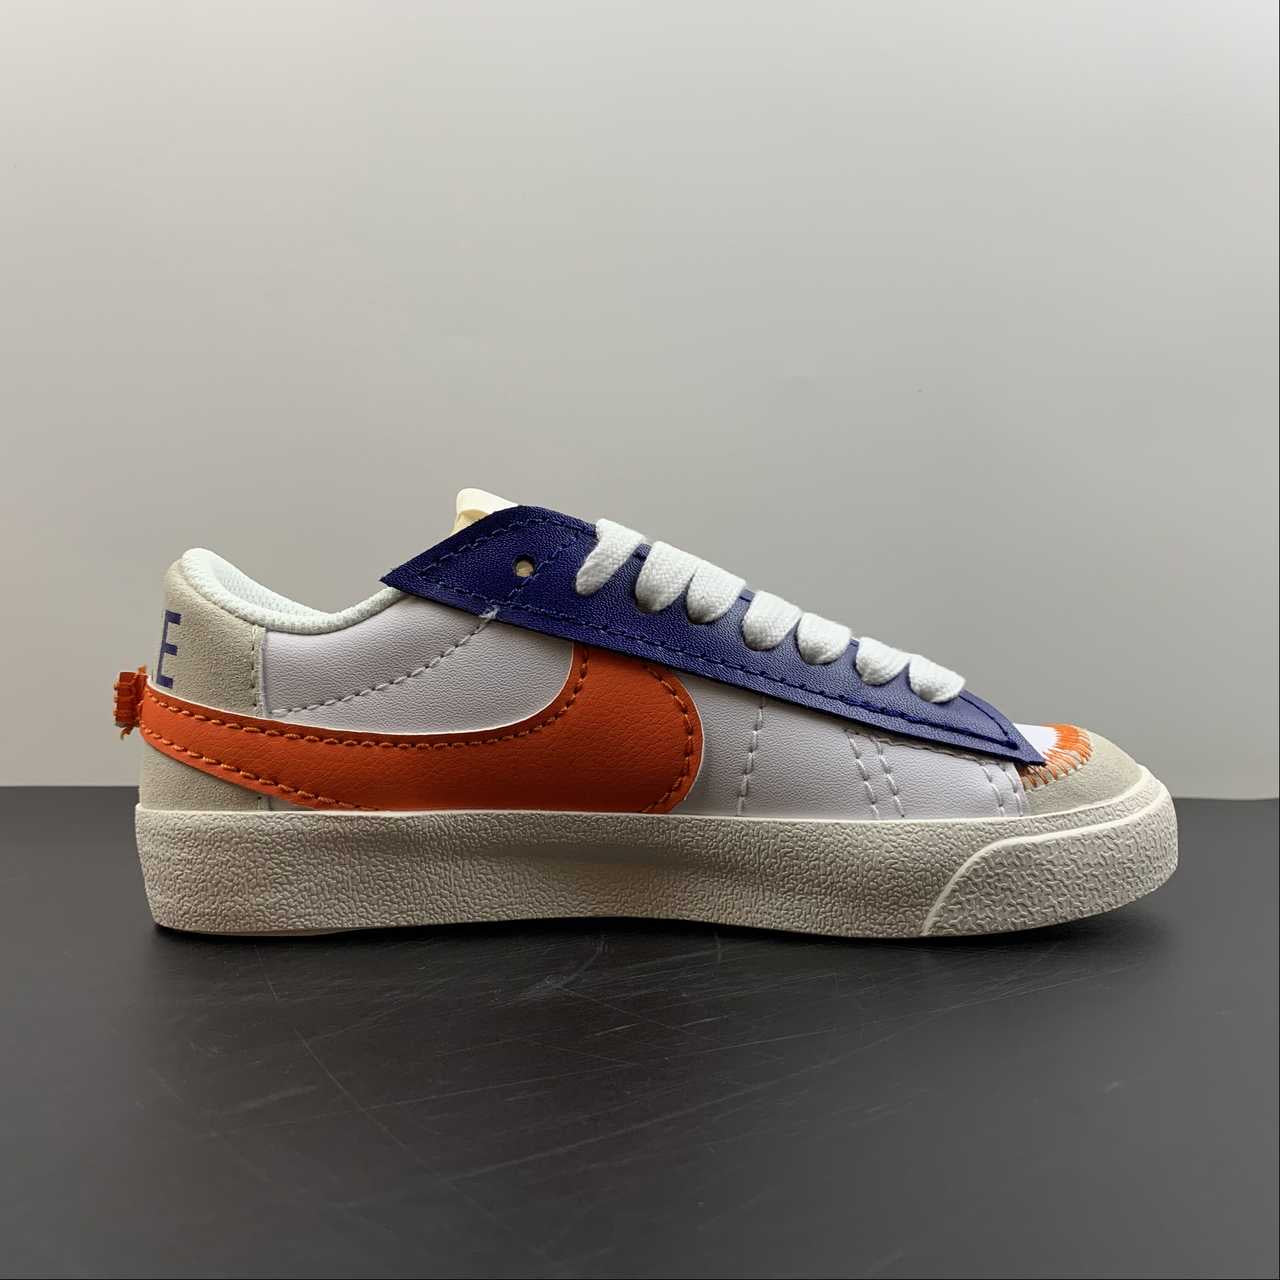 Nike blazer low orange/blue